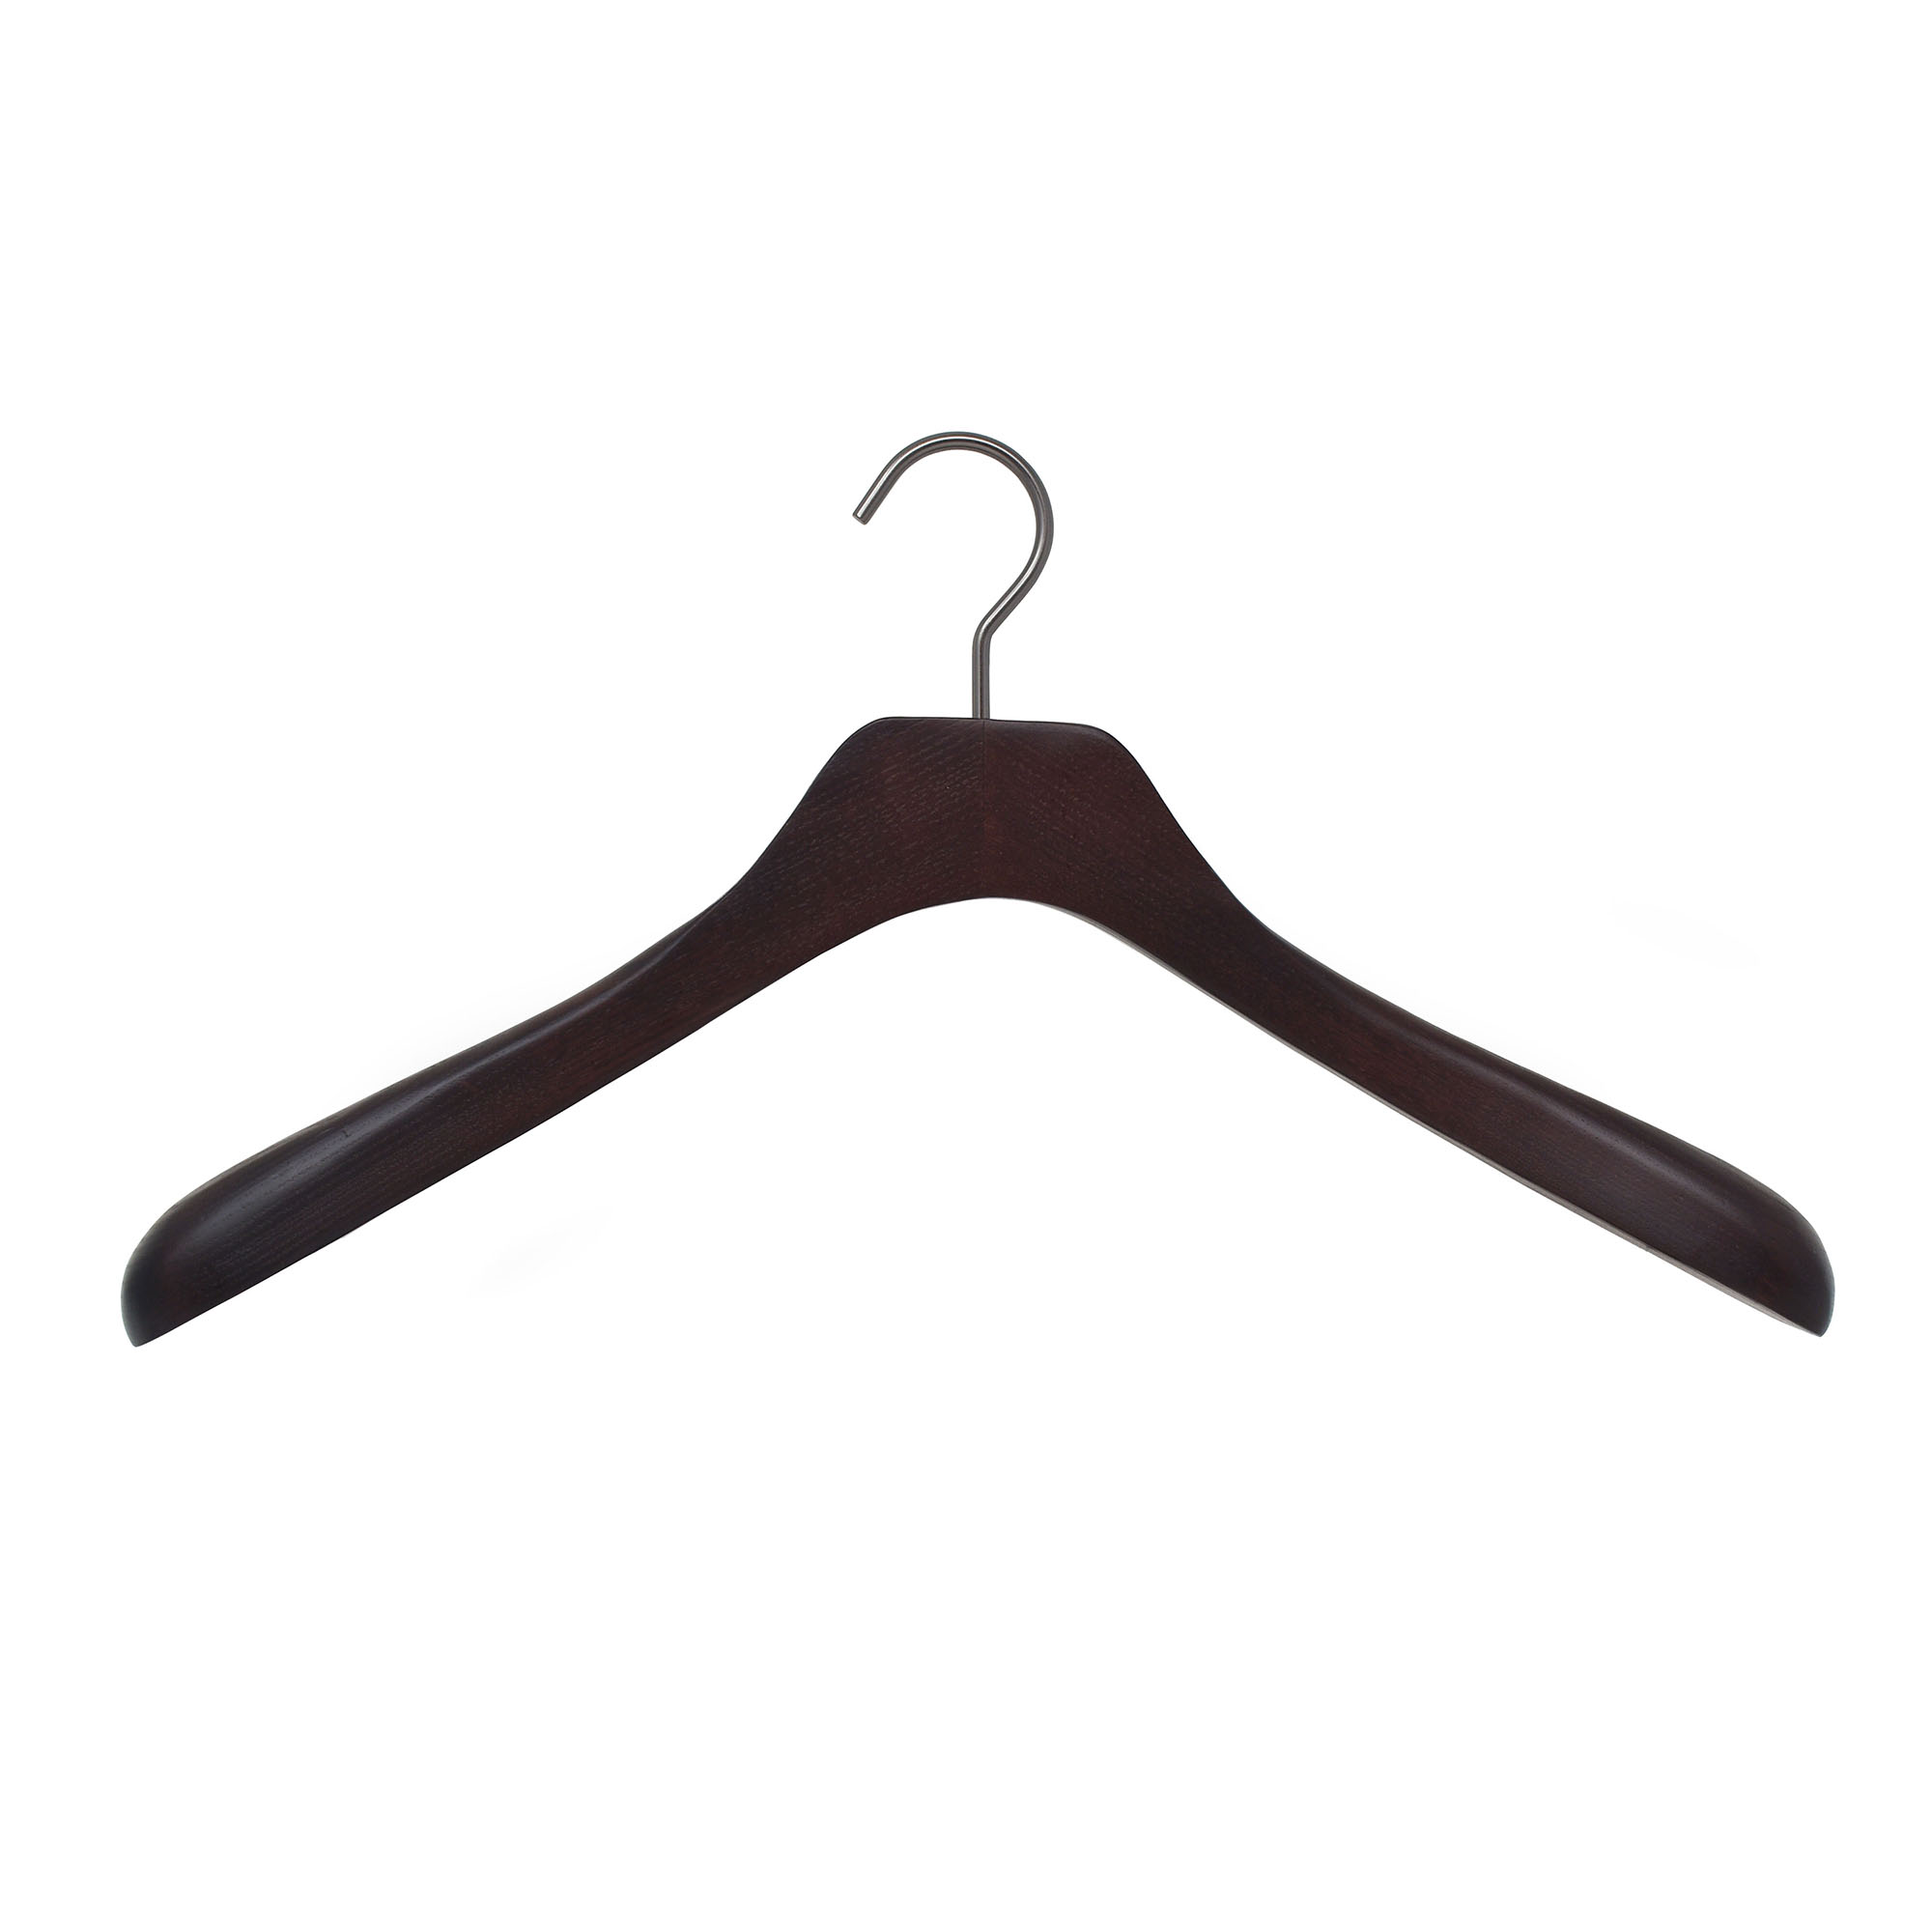 Hanger for men's jacket and coat, walnut color